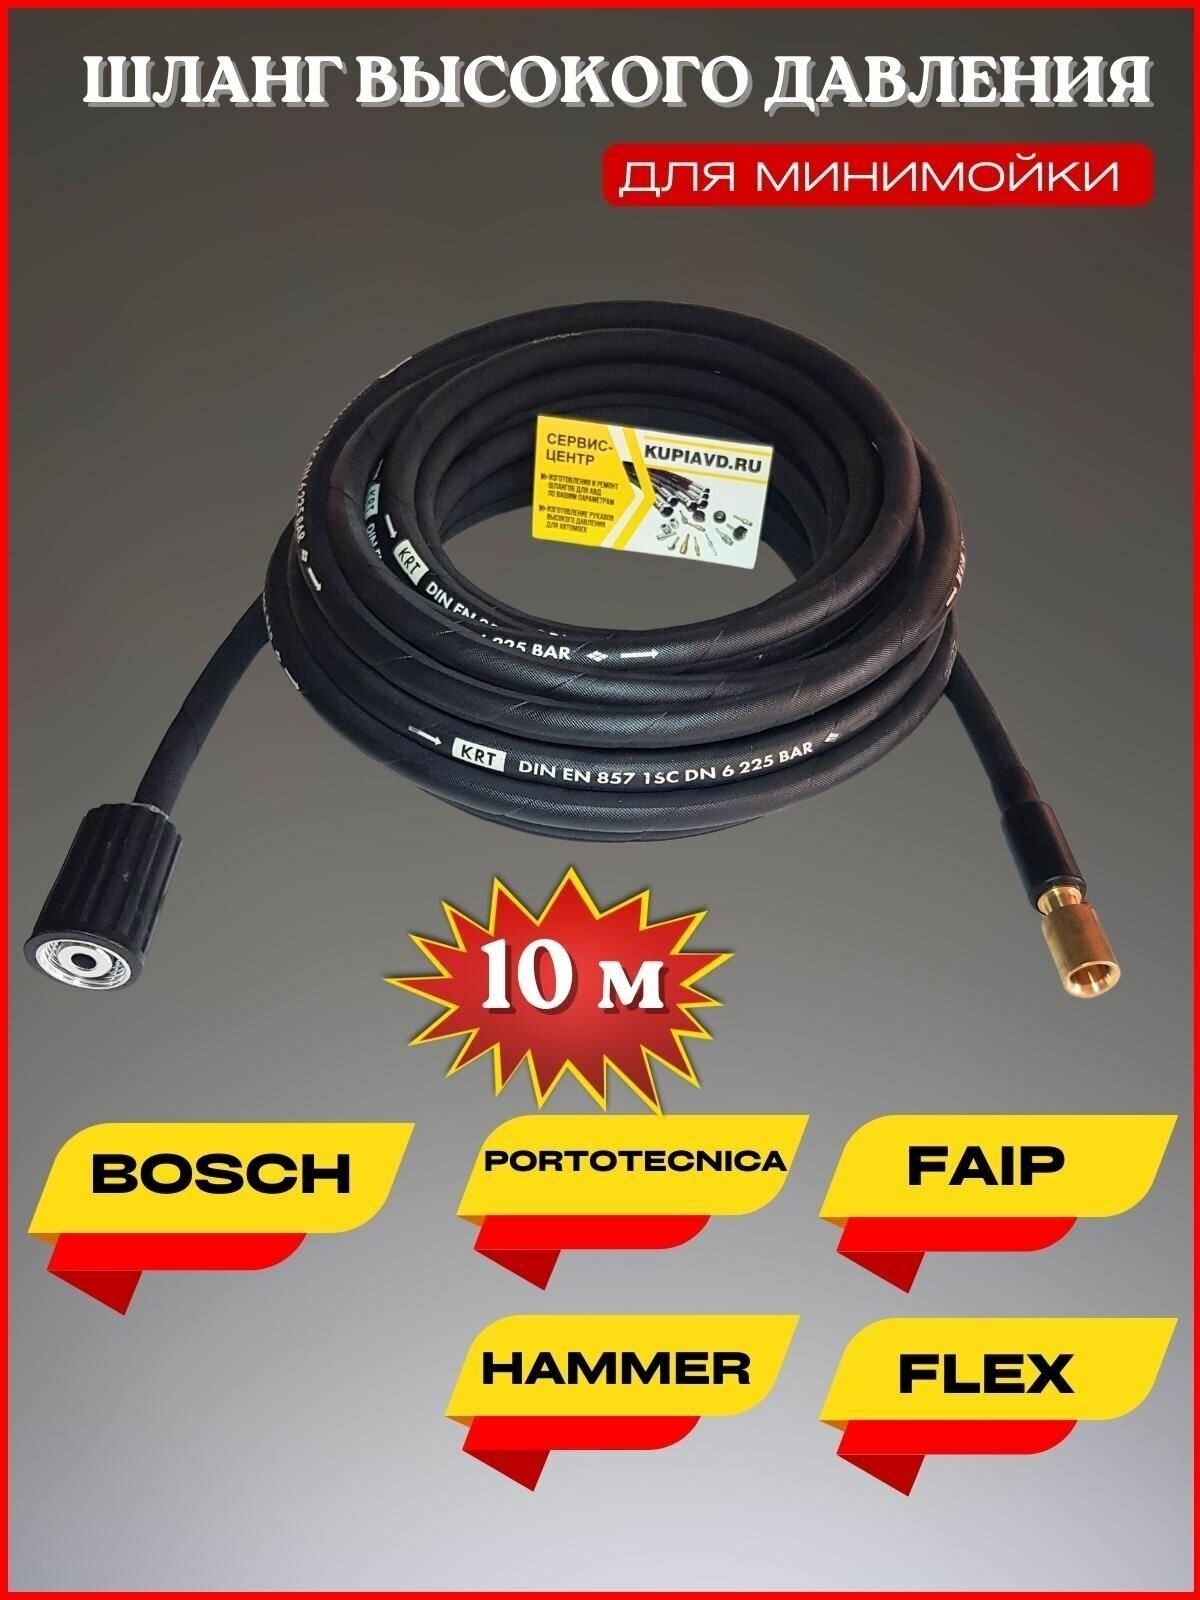 Шланг высокого давления для Bosch Portotecnica Faip Hammer Flex